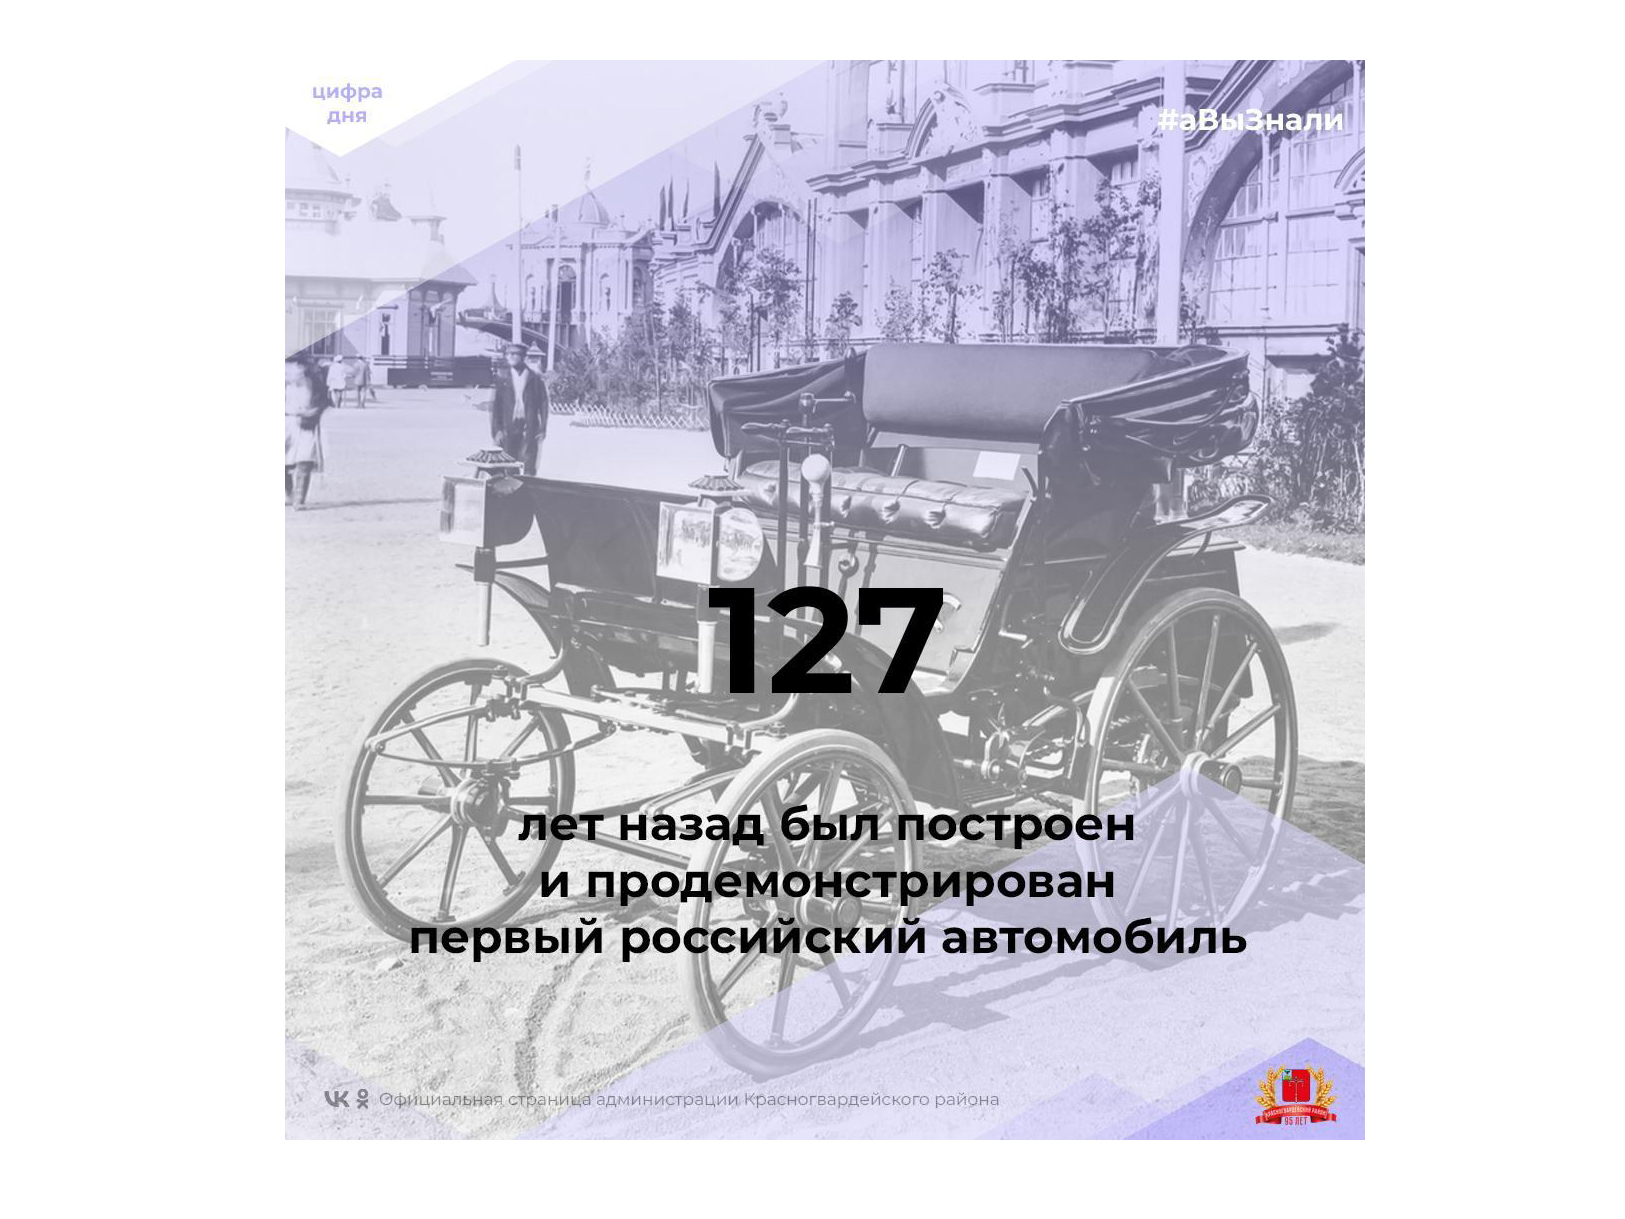 #аВыЗнали, что первый российский автомобиль был построен и продемонстрирован в 1896 году изобретателями Яковлевым и Фрезе на Нижегородской выставке?.